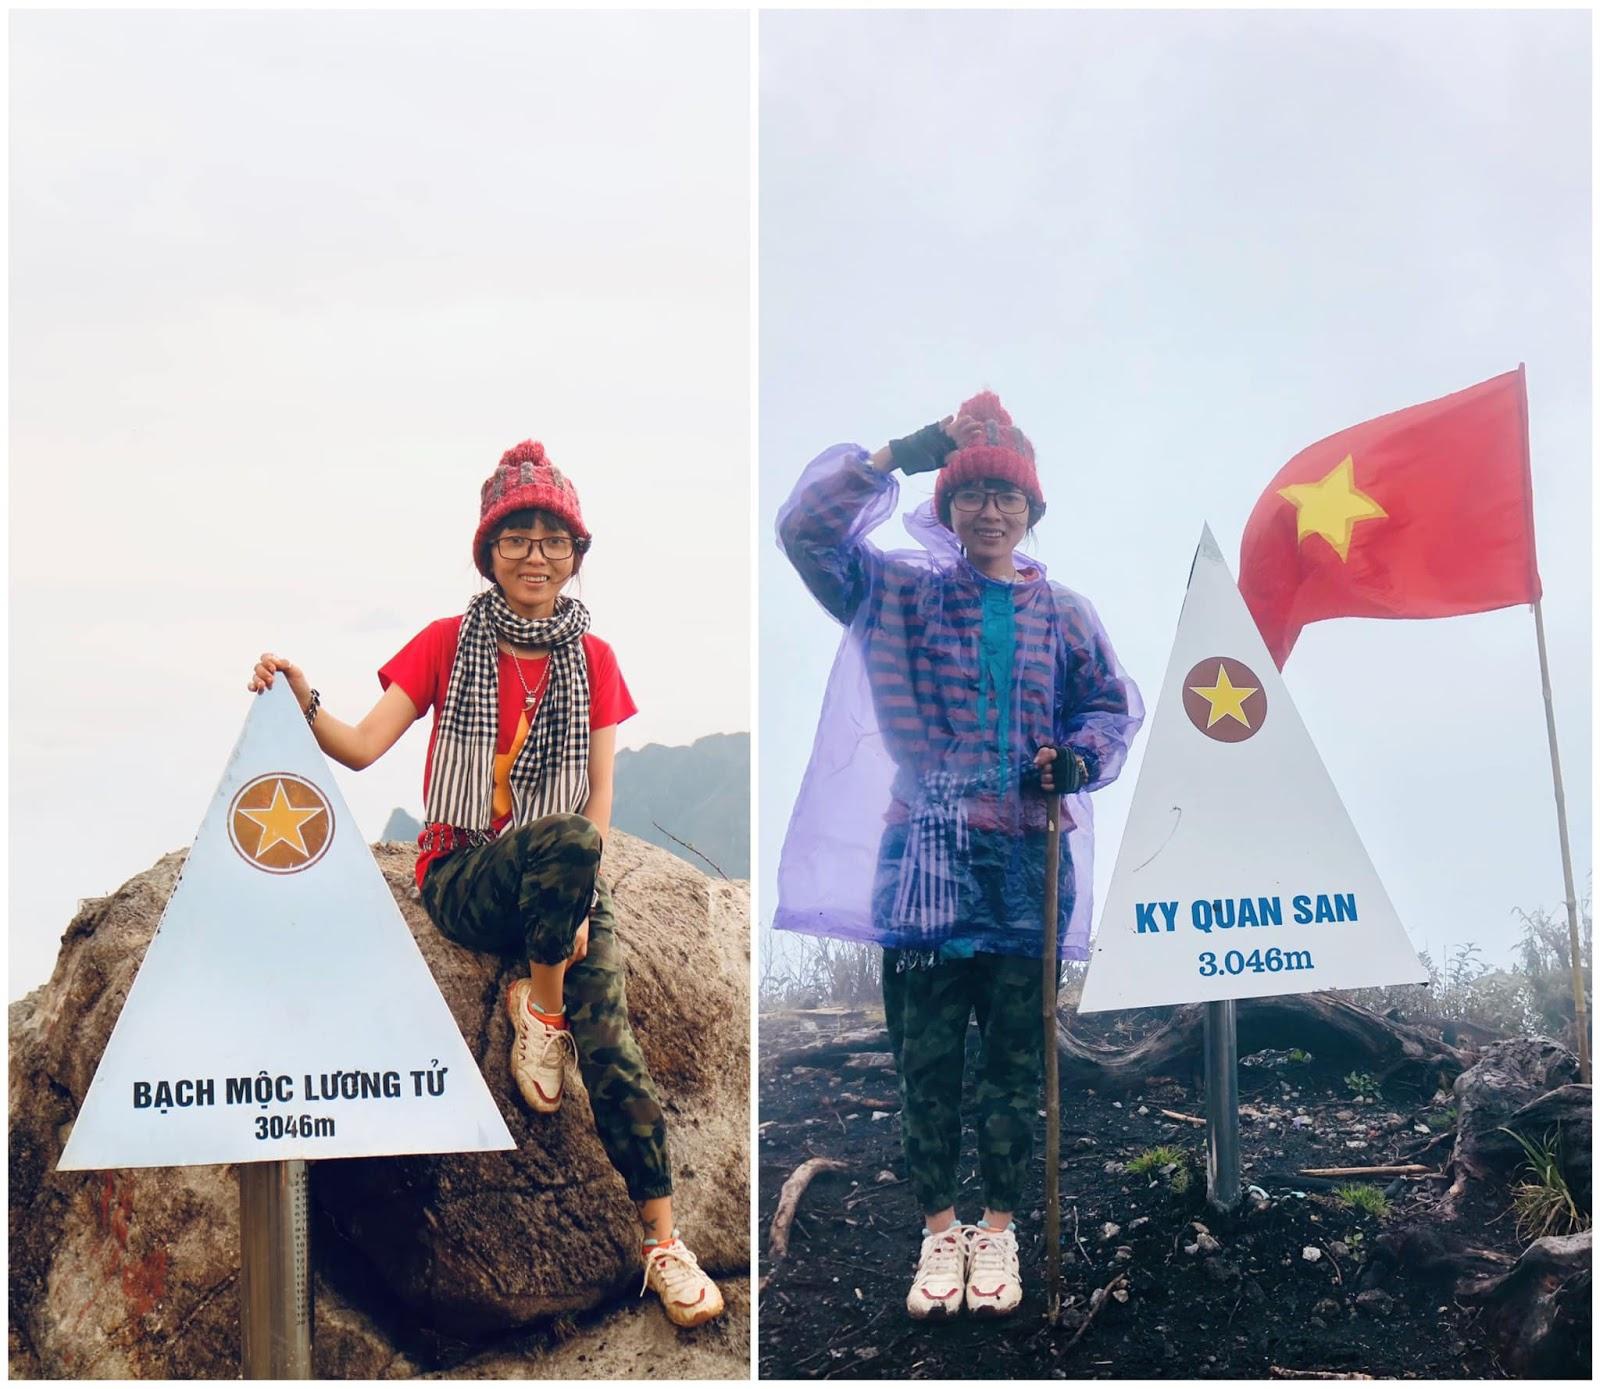 Cô kỹ sư nông nghiệp chinh phục 15 đỉnh núi cao ở Việt Nam trong 2 năm - 1